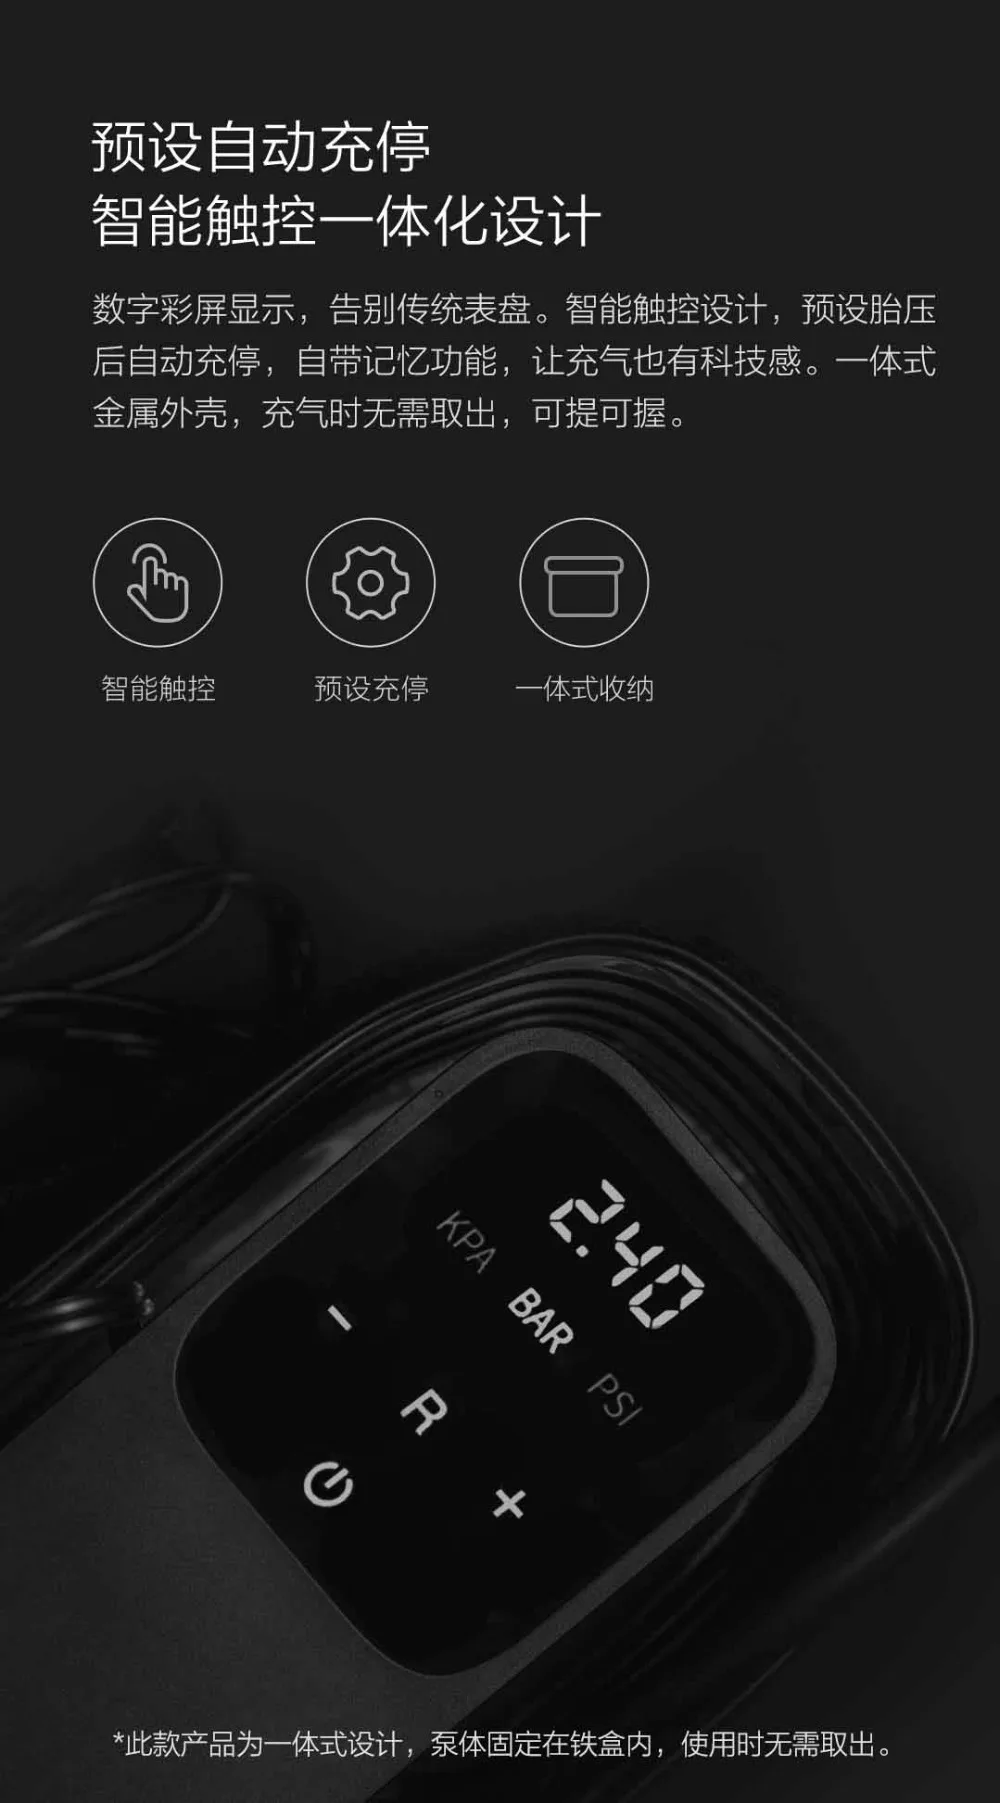 Xiaomi 70mai воздушный компрессор переносной электрический автомобильный воздушный насос металлический Box12V 70 MAI мини-насос для накачивания шин